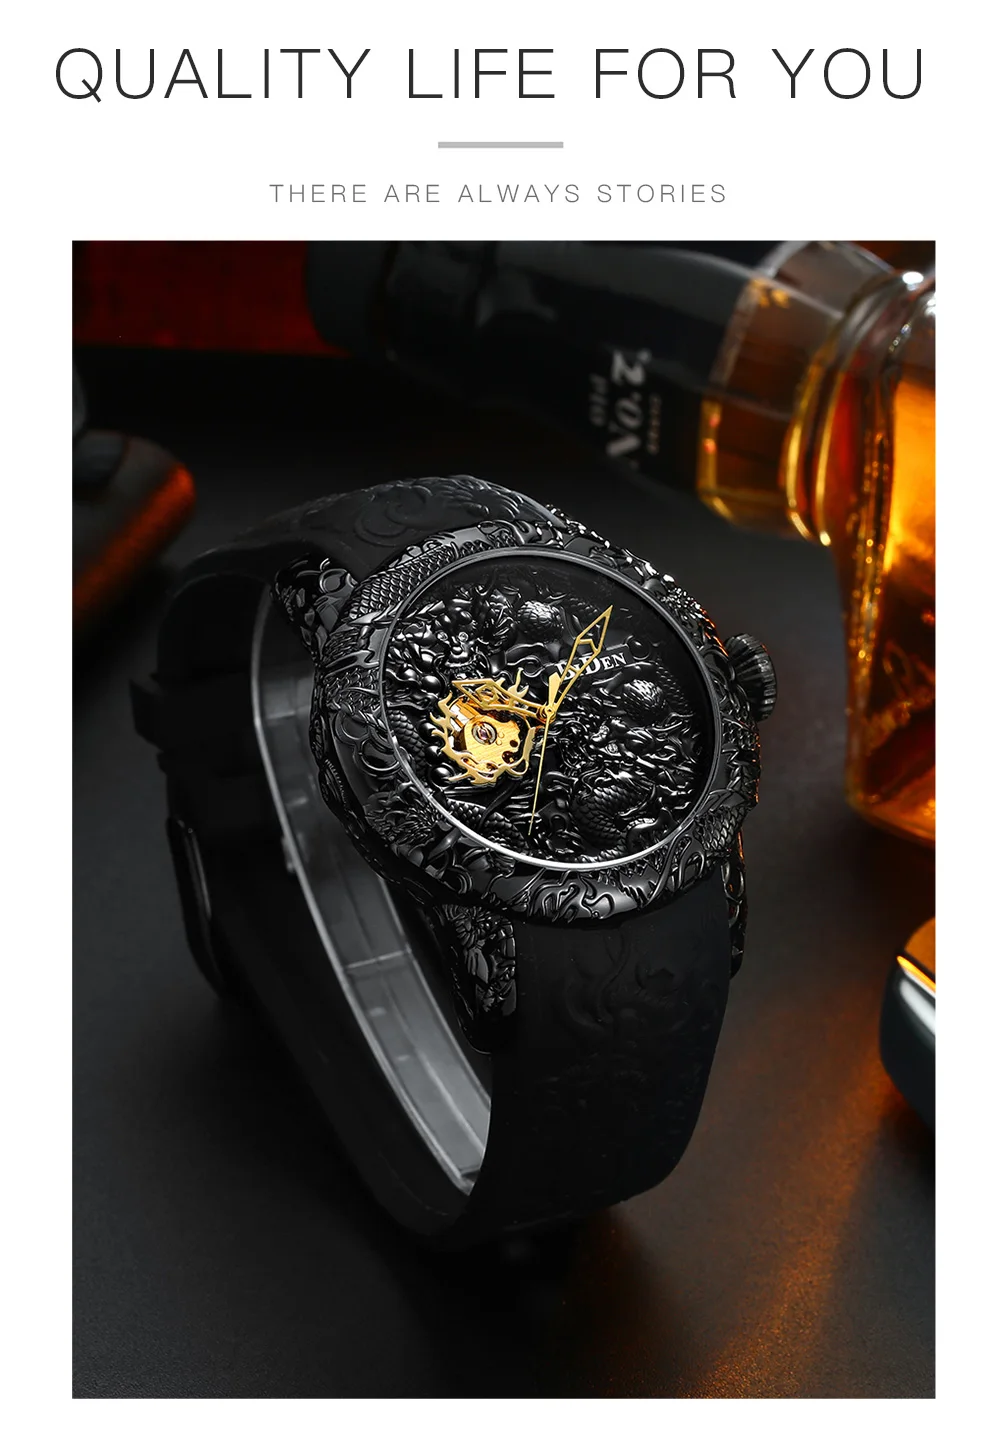 Мужские механические часы мужские большие часы золотые полностью черные наручные часы Креативные 3D Скульптура Дракон лазерная гравировка мужские ручные ветровые часы